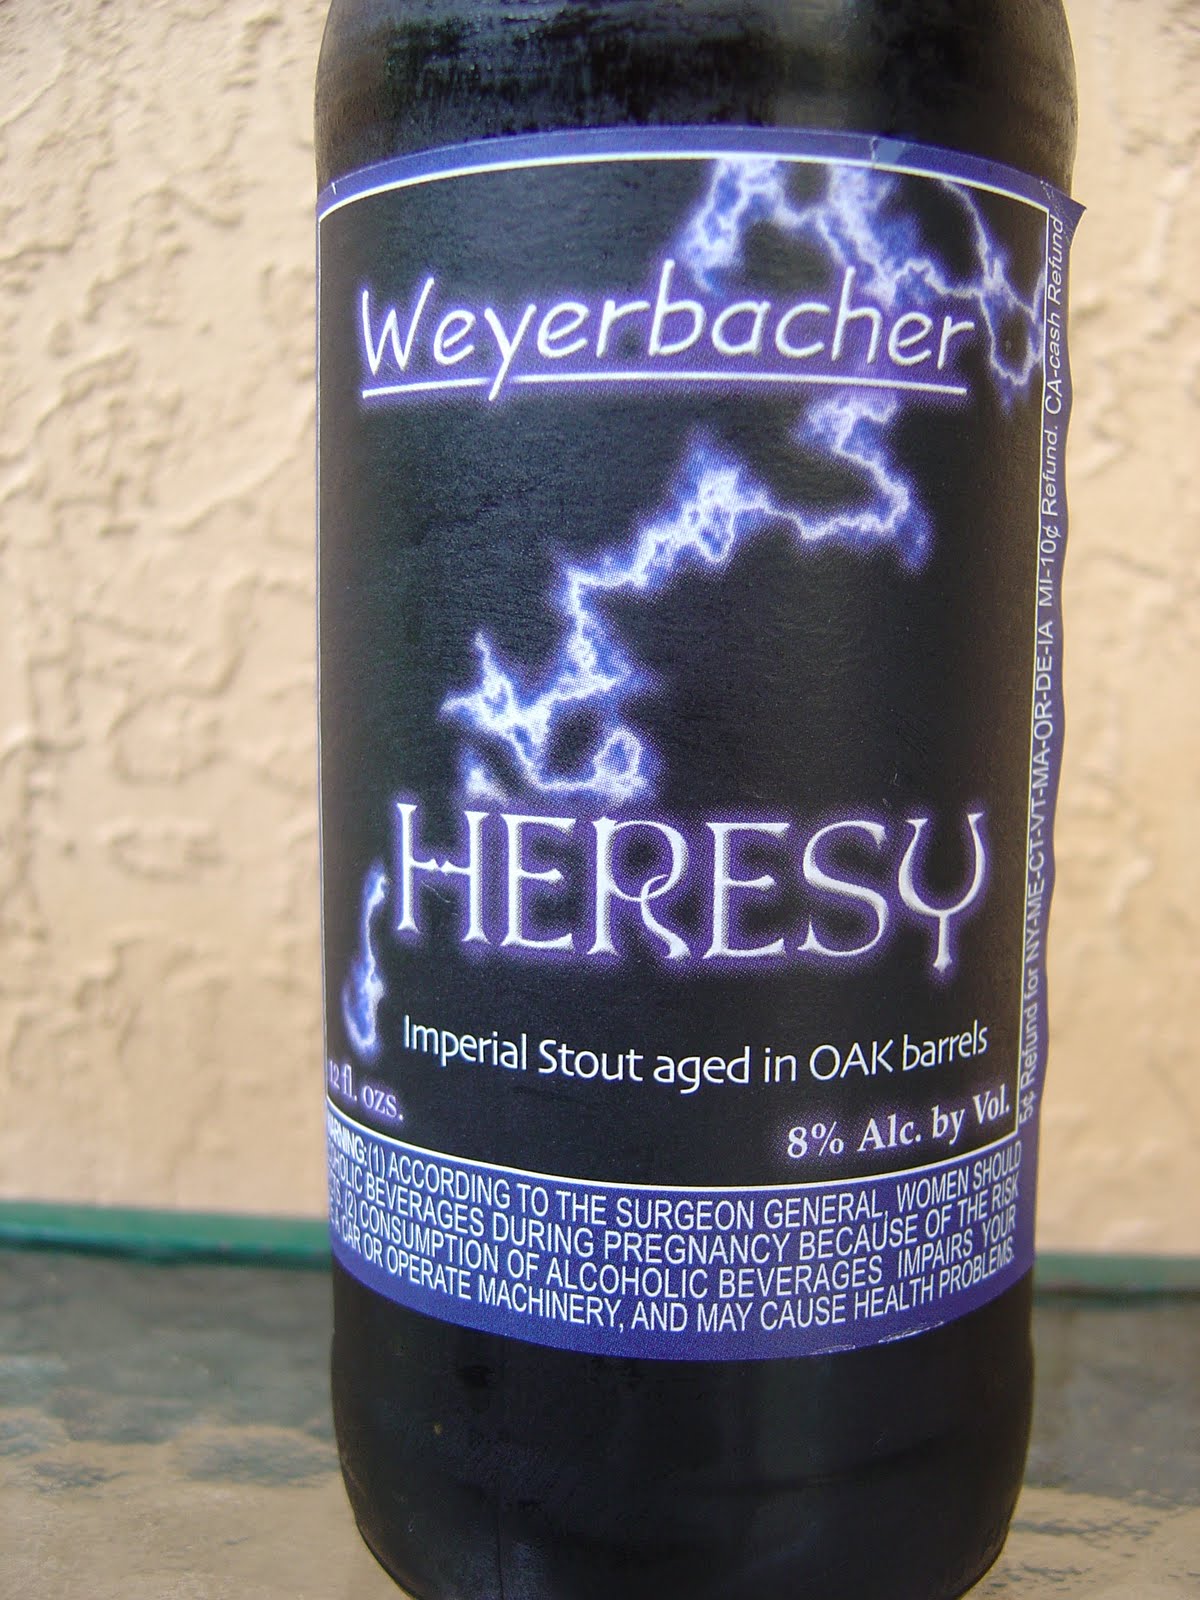 Weyerbacher Heresy